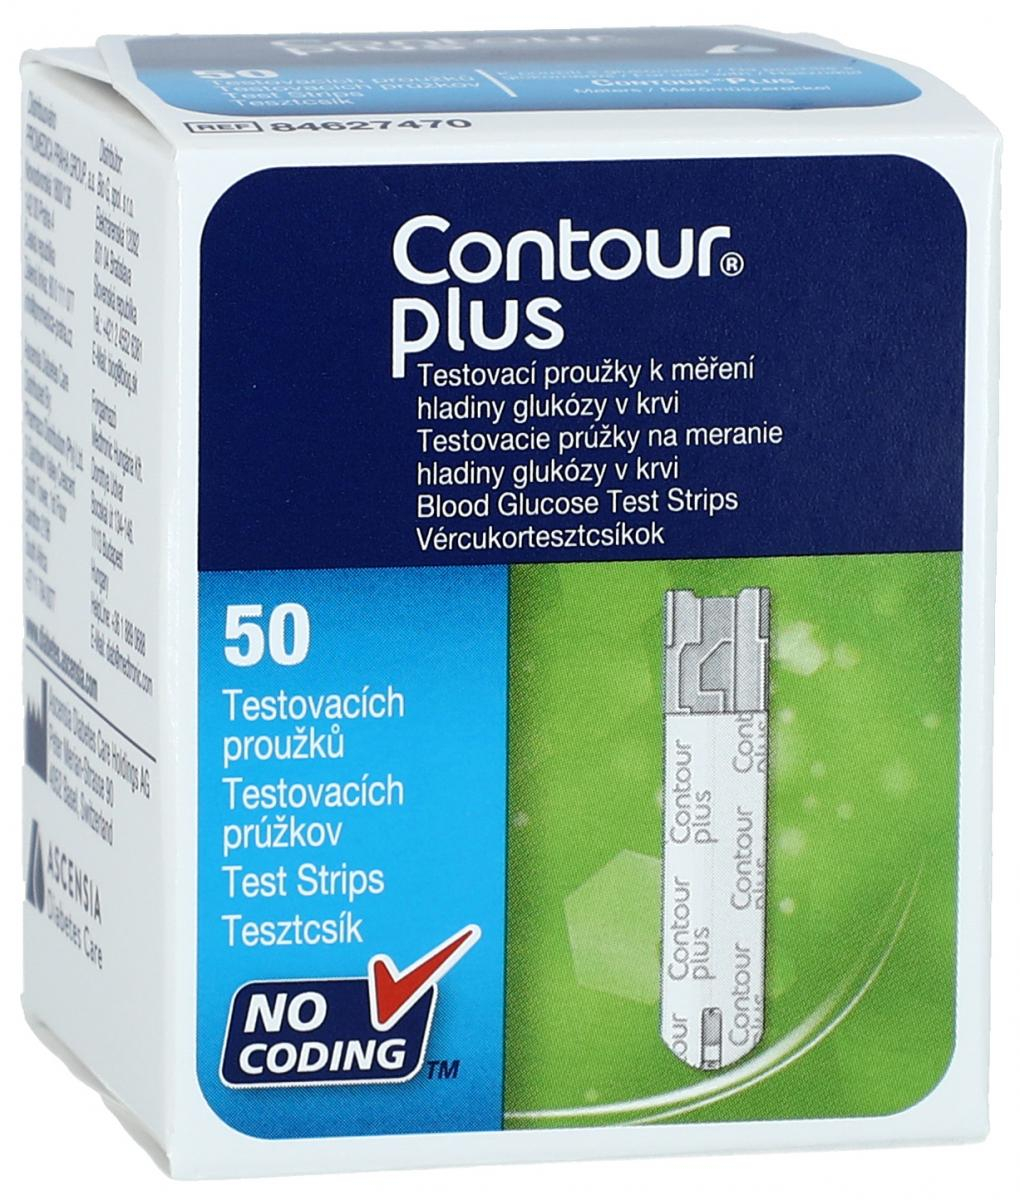 Contour Plus testovací proužky k měření hladiny cukru v krvi 50 ks